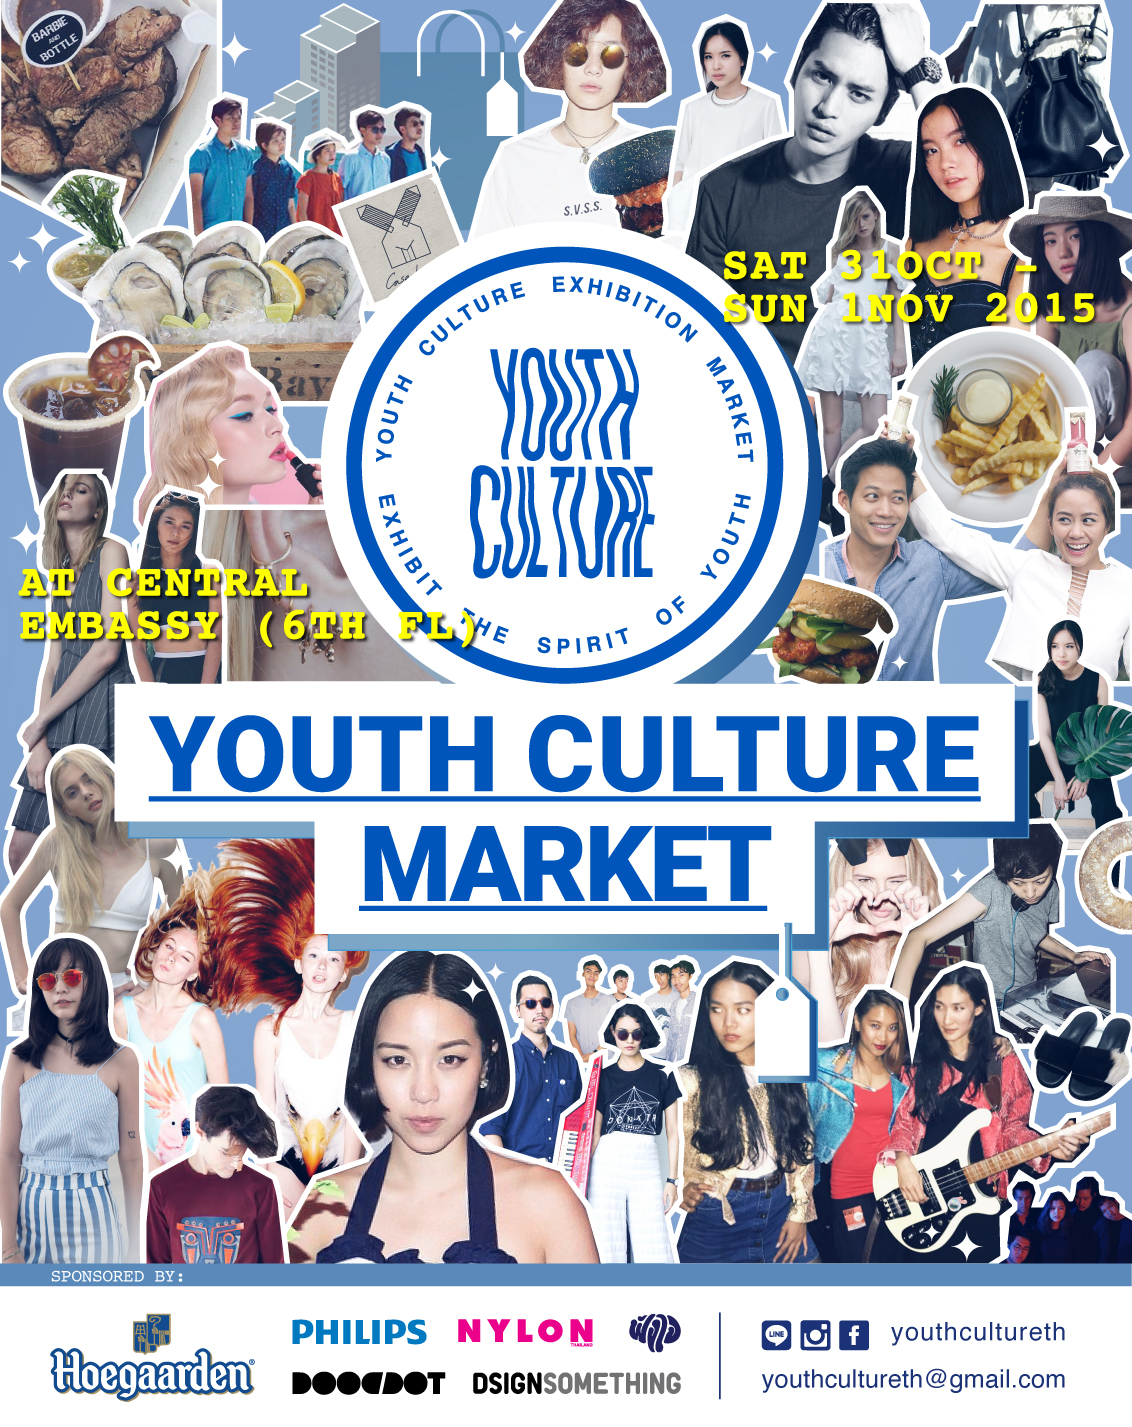 ชวนคุณมาเปิดประสบการณ์สุดล้ำ กับพื้นที่ศิลปะของคนรุ่นใหม่ !! ในงาน YOUTH CULTURE  Exhibition Market